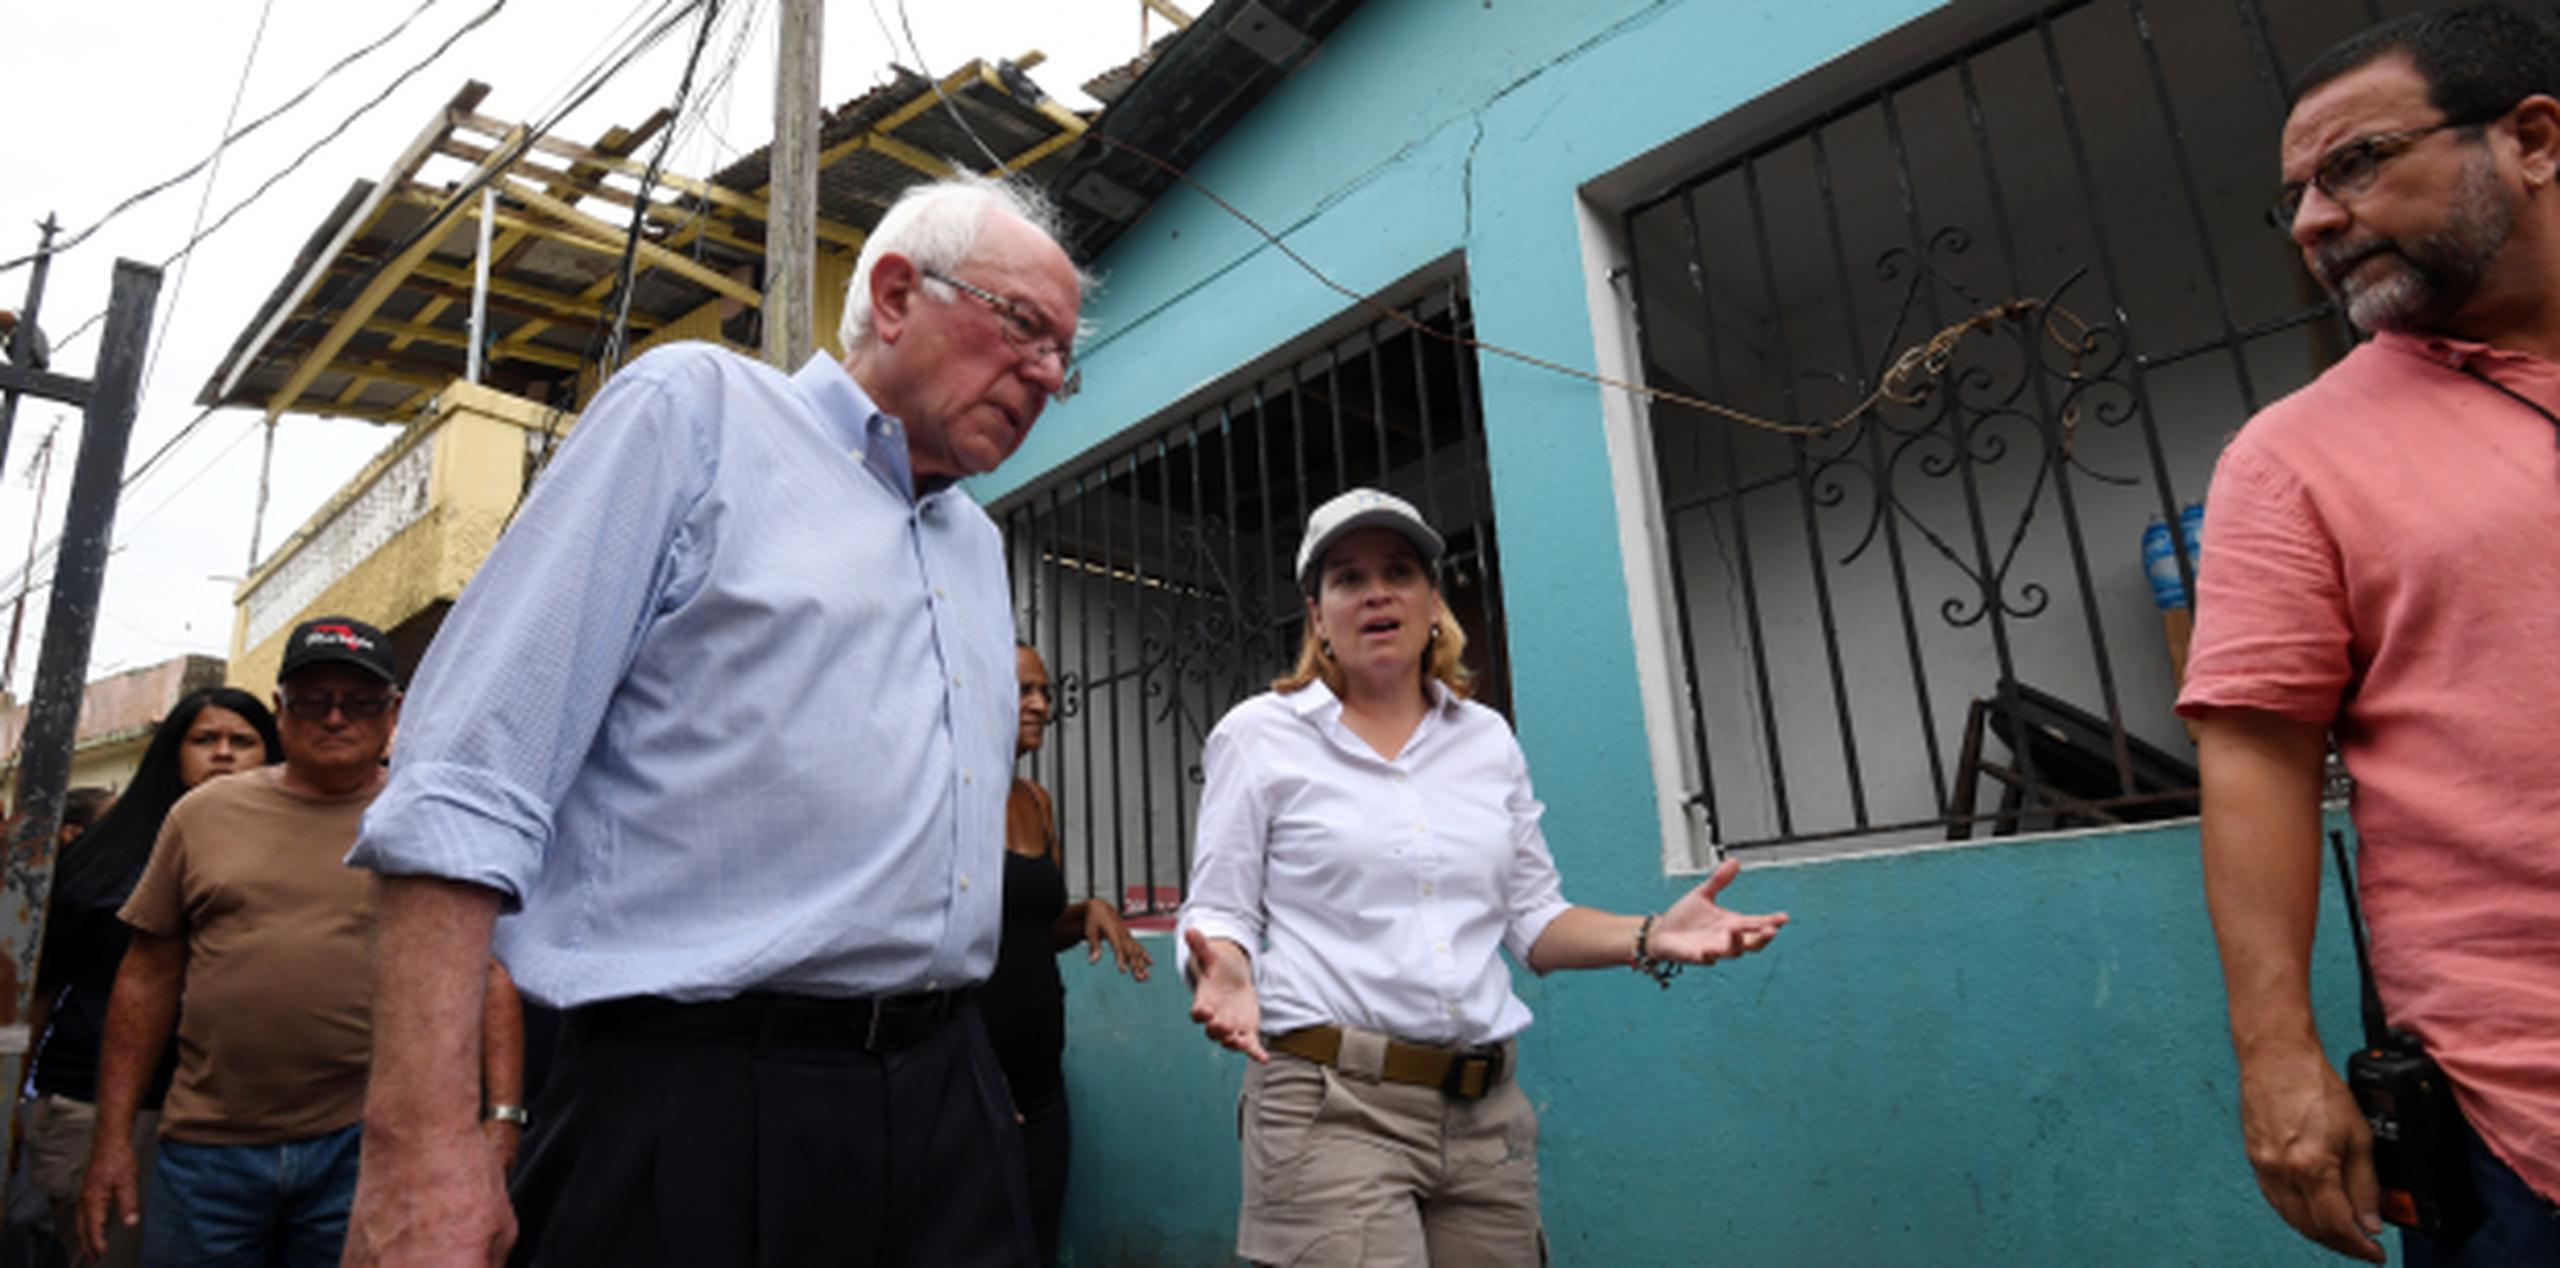 El senador Bernie Sanders recorrió la comunidad de Playita, en San Juan, junto a la alcadesa capitalina Carmen Yulín Cruz. (andre.kang@gfrmedia.com)